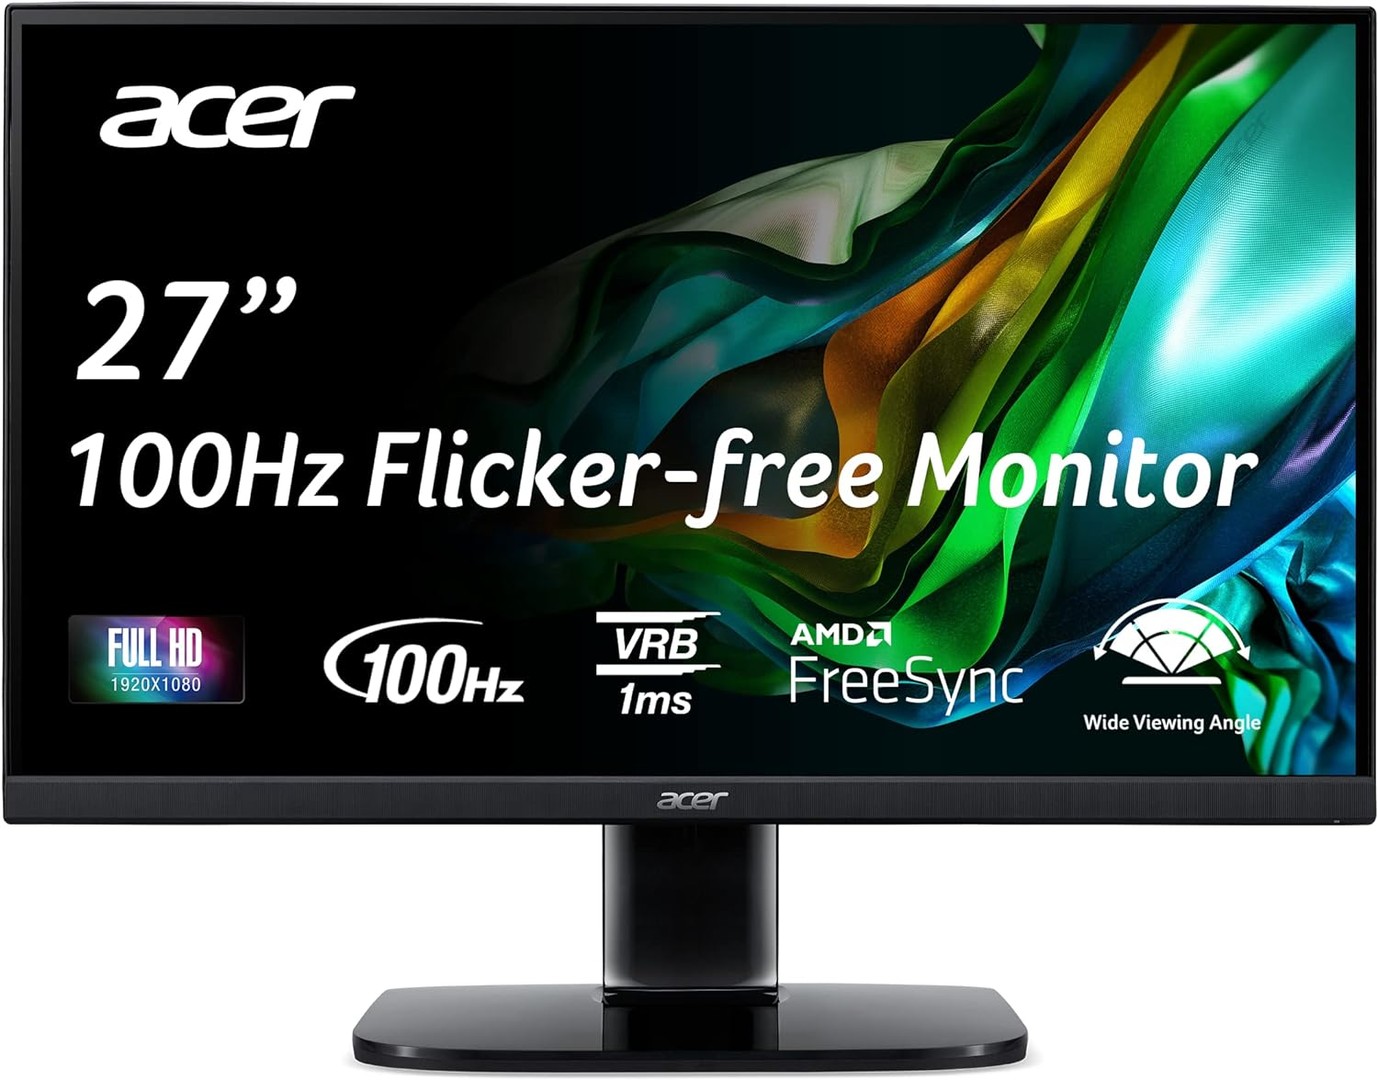 computadoras y laptops - Acer KB272 27 Pulgadas Full HD (1920x1080) AMD FreeSync 100Hz  1ms Iclinacion  1